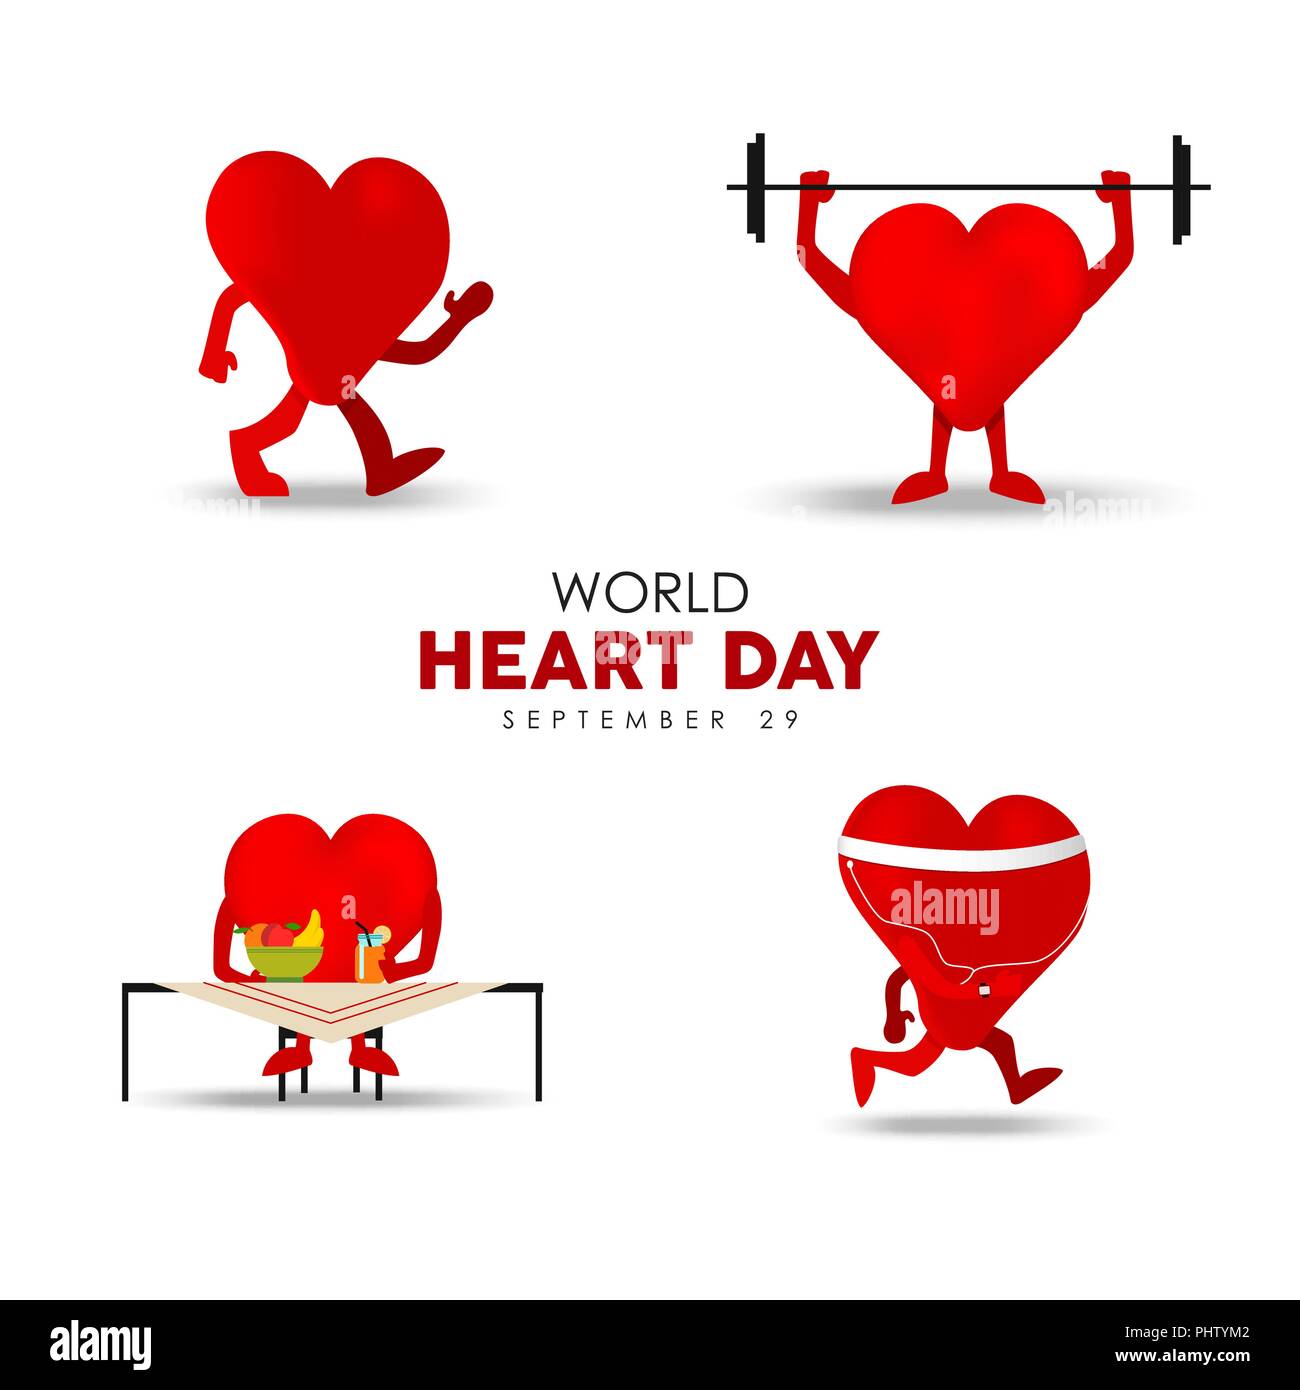 World Heart Day Illustration für Ernährung und Bewegung Konzept, Rot heartshape Zeichensatz zu tun gesunde Aktivität. EPS 10 Vektor. Stock Vektor